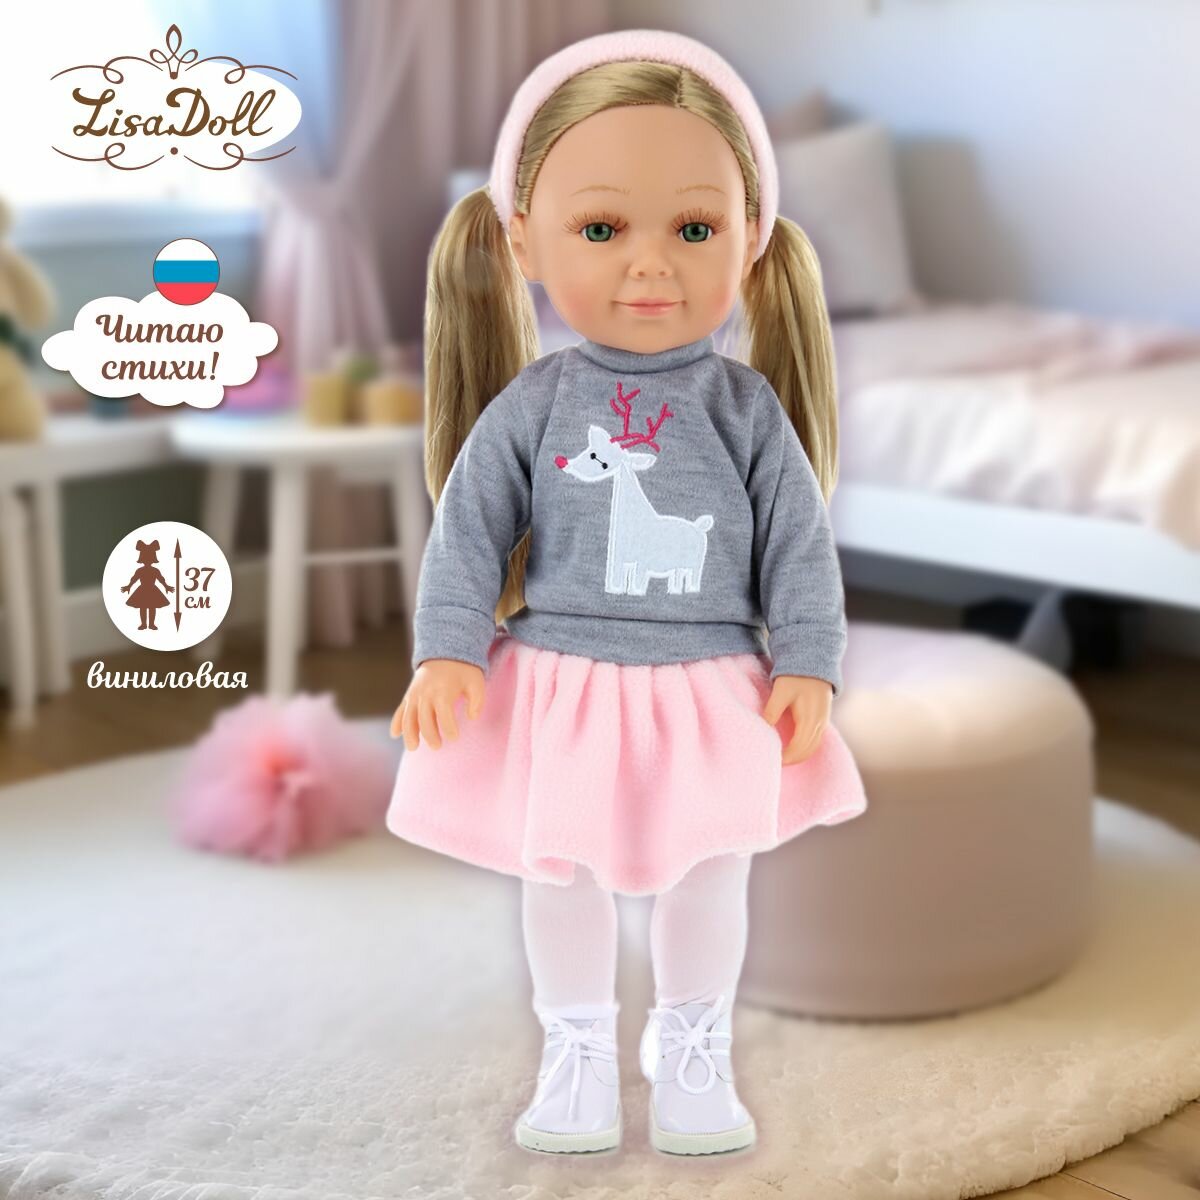 Кукла интерактивная со звуком Ева 37 см, Lisa Doll / Куколка шарнирная с русской озвучкой / Коллекционная виниловая кукла для девочек